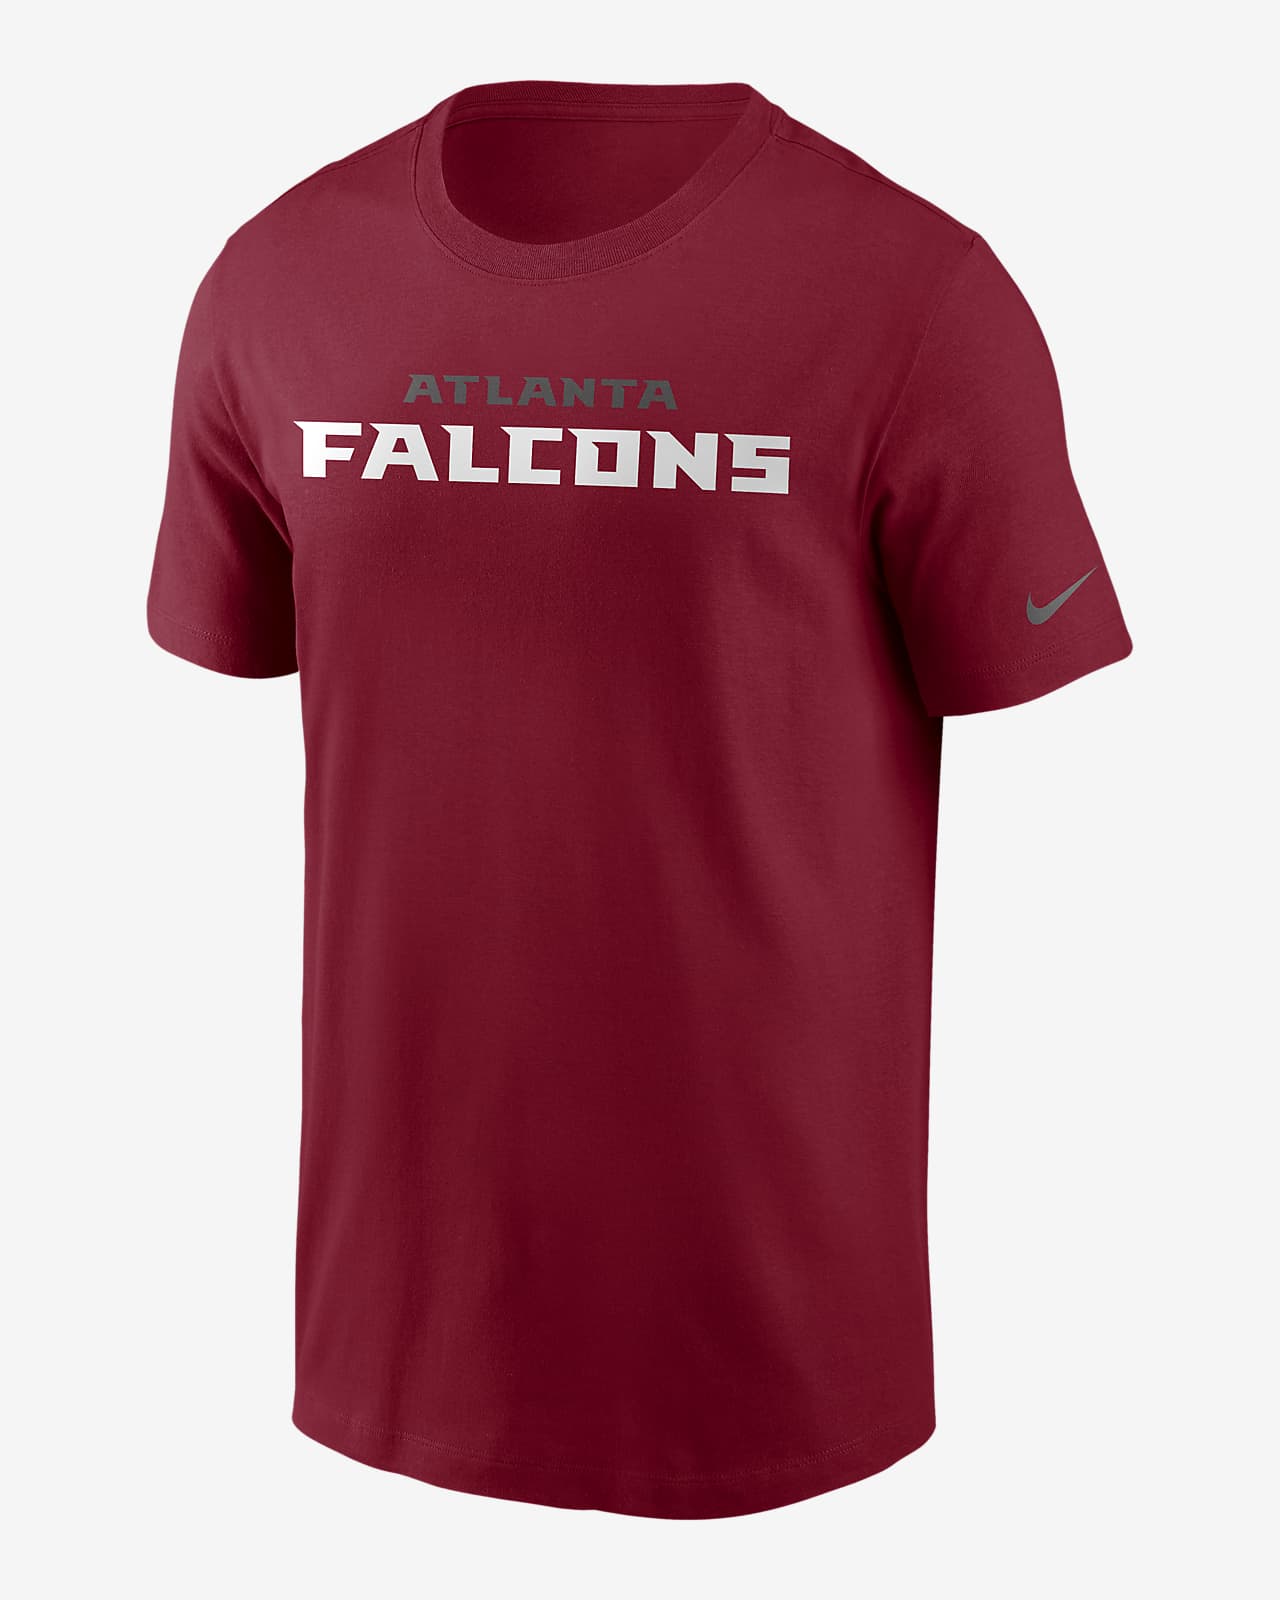 Nike (NFL Falcons) Men's T-Shirt. Nike.com